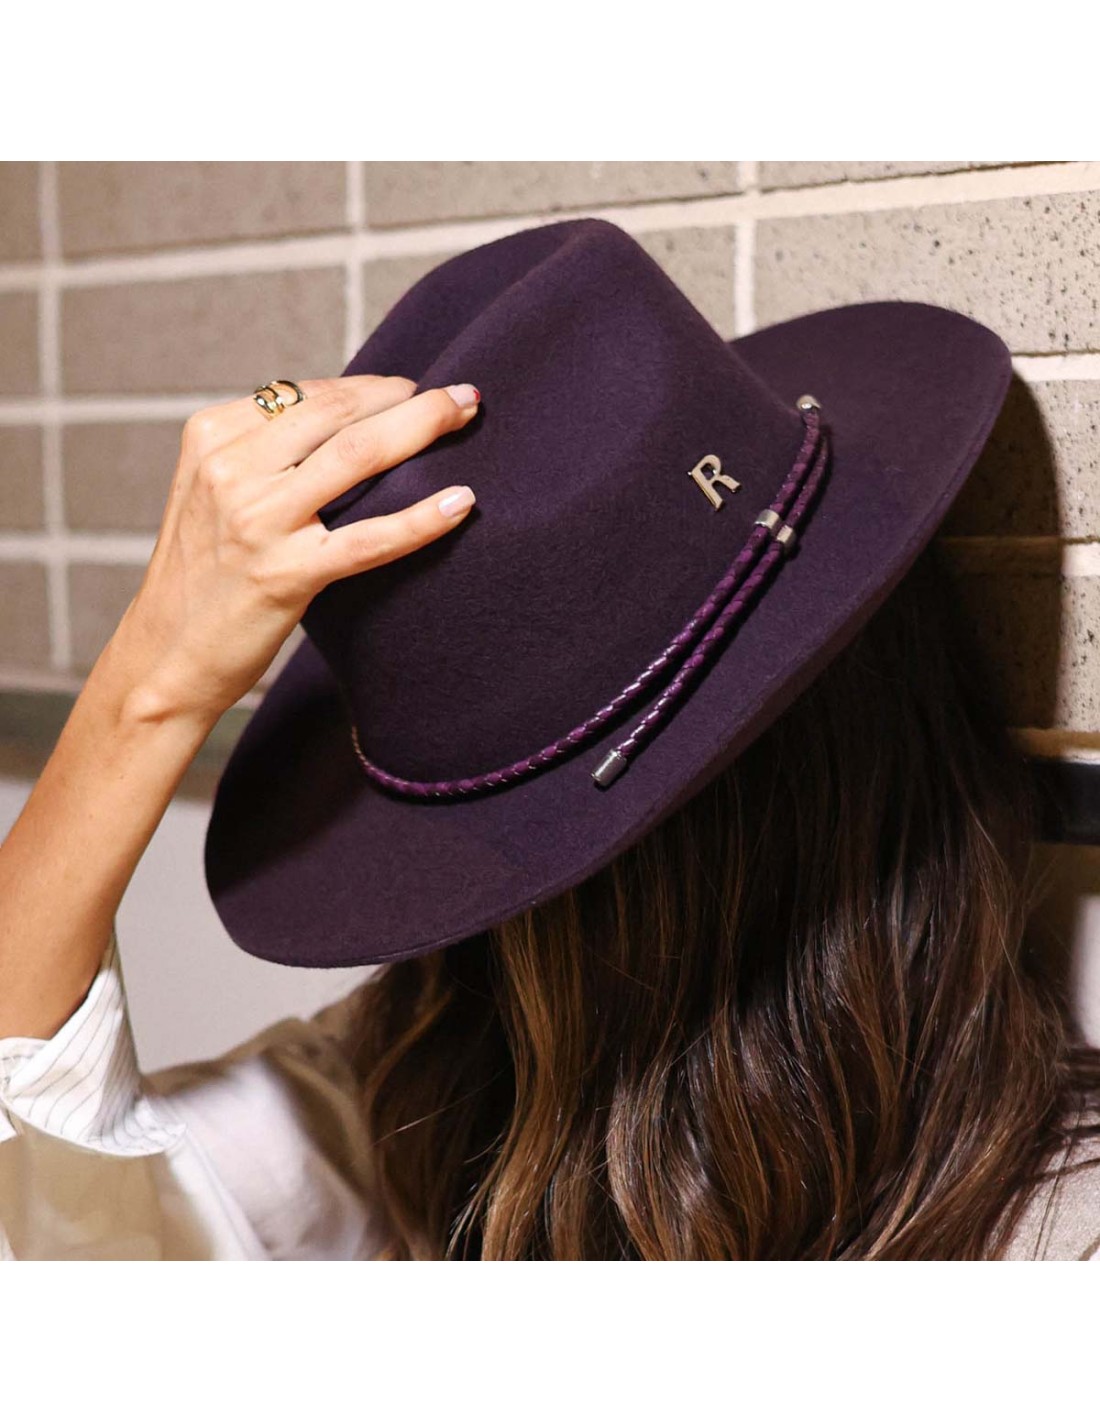 Le chapeau femme : véritable accessoire de mode pour l'hiver